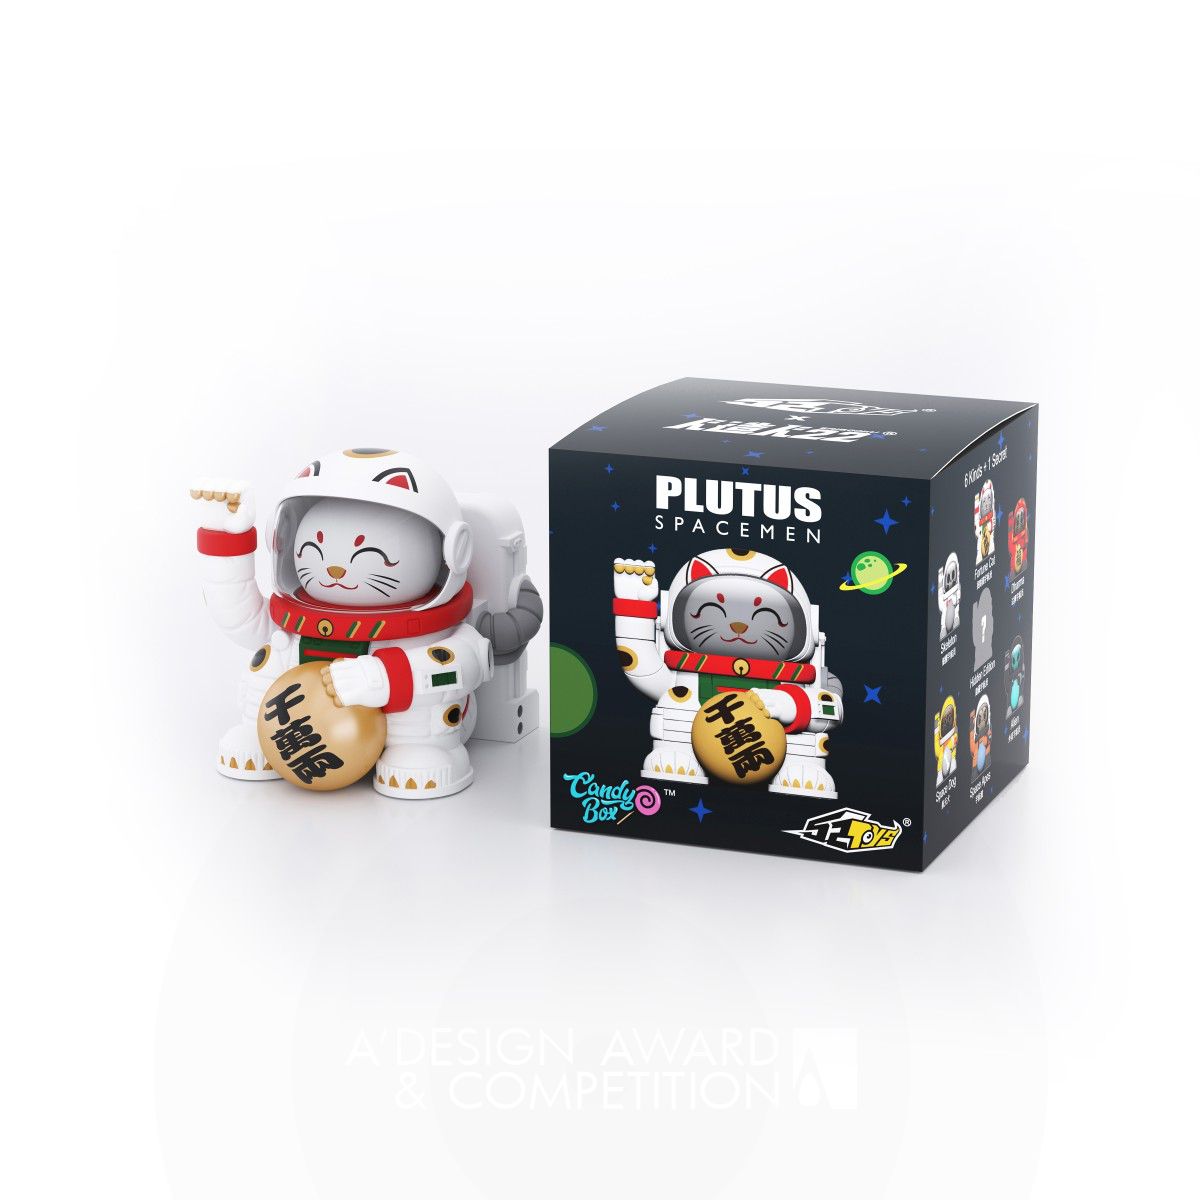 Plutus Spacemen Toys by Daybreak Li